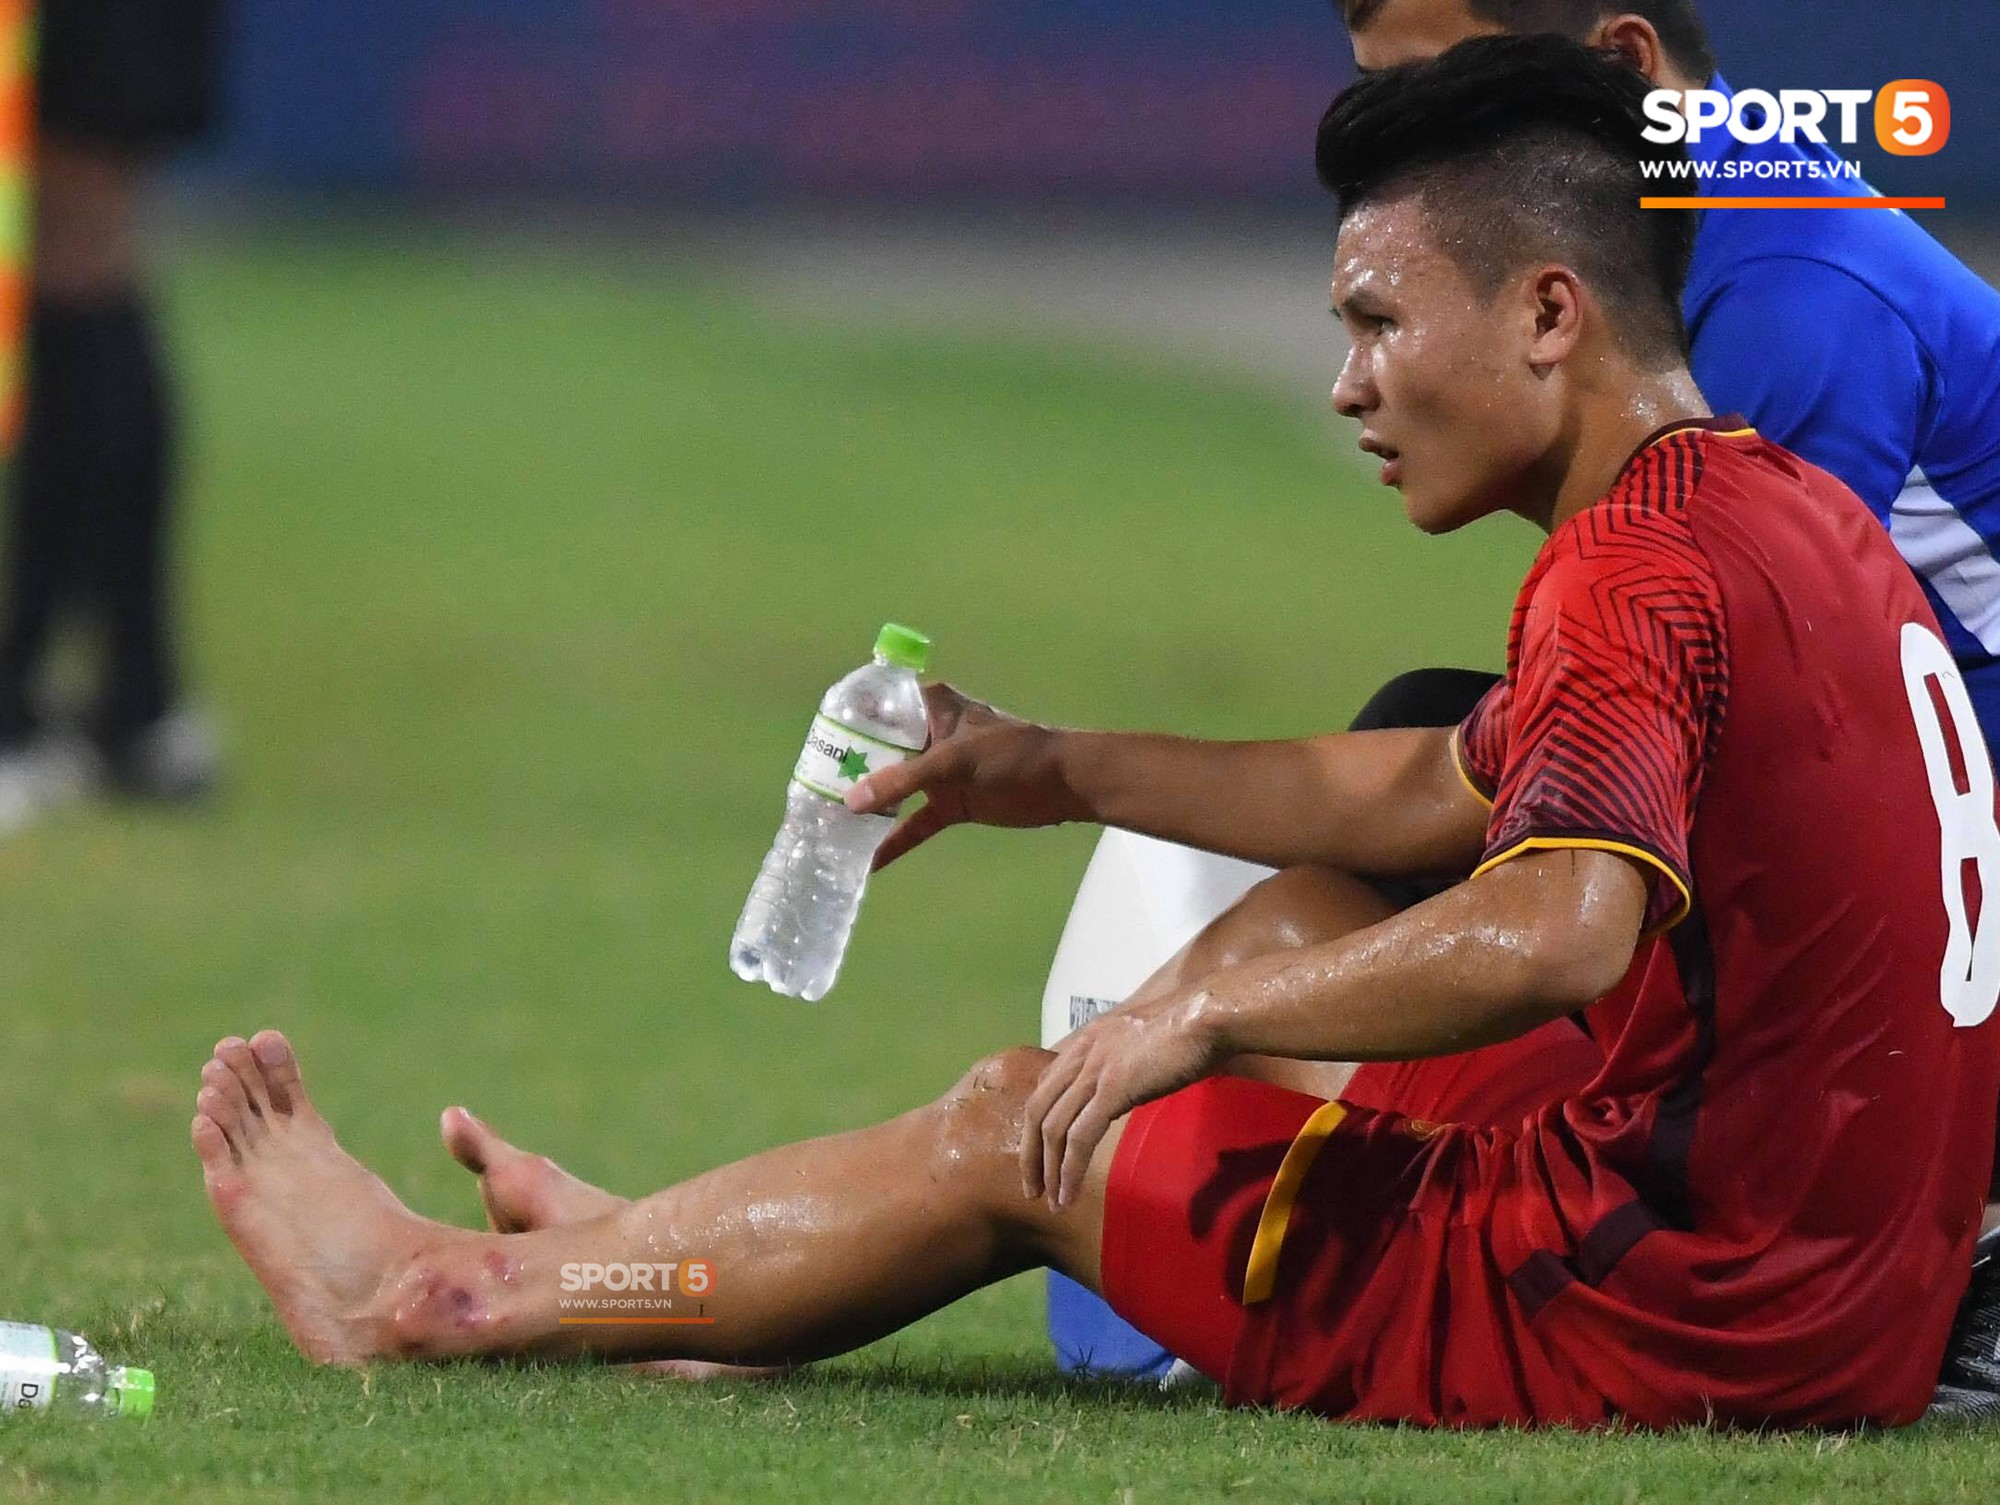 Văn Đức tỏa sáng với 1 pha xử lý đẳng cấp, U23 Việt Nam hòa U23 Uzbekistan trong trận đấu cuối cùng - Ảnh 9.